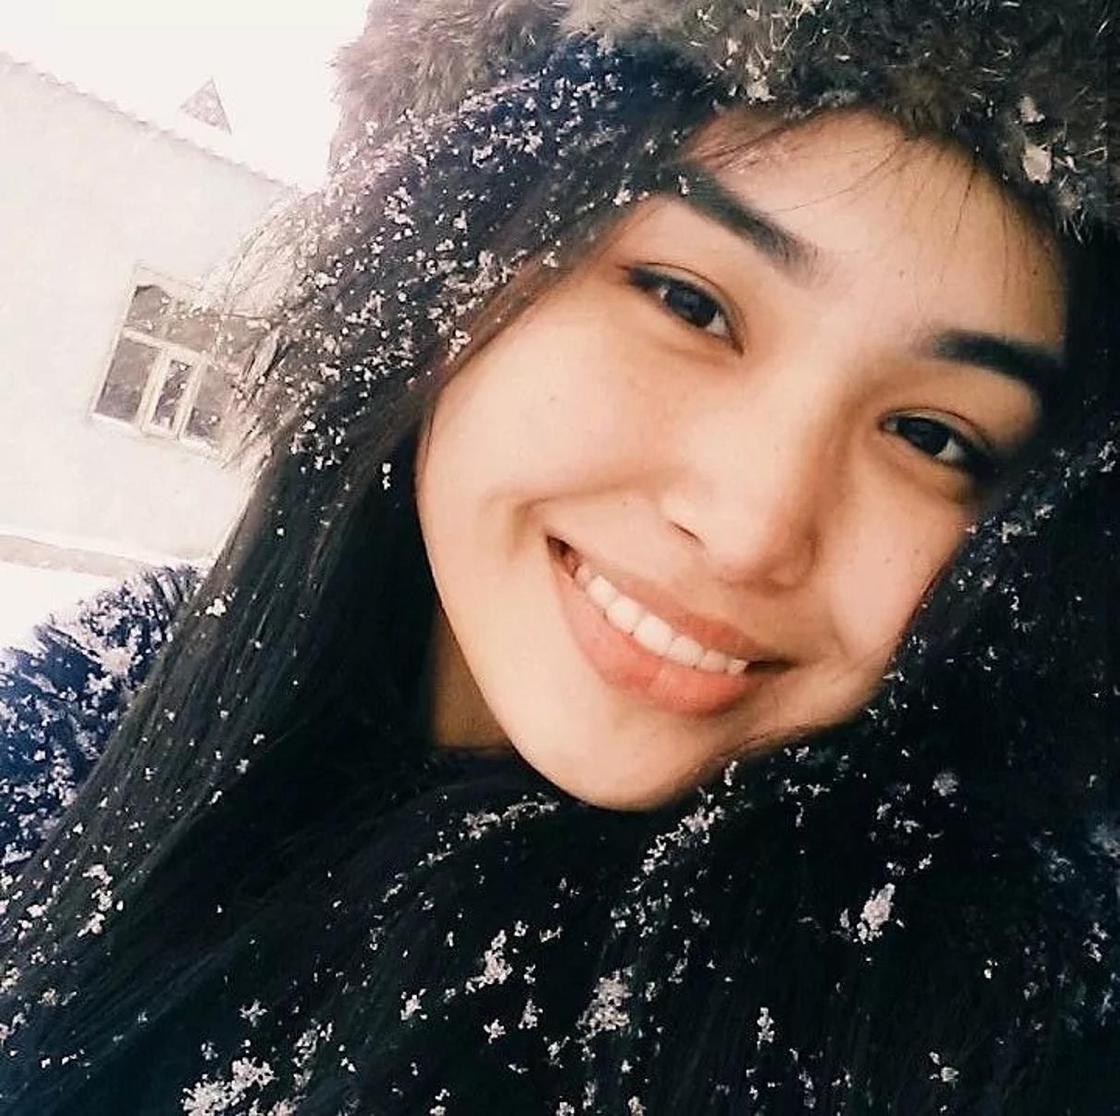 Жамбыл облысы: Рысалдиева Мадина, 18 жаста - Miss Virtual Taraz